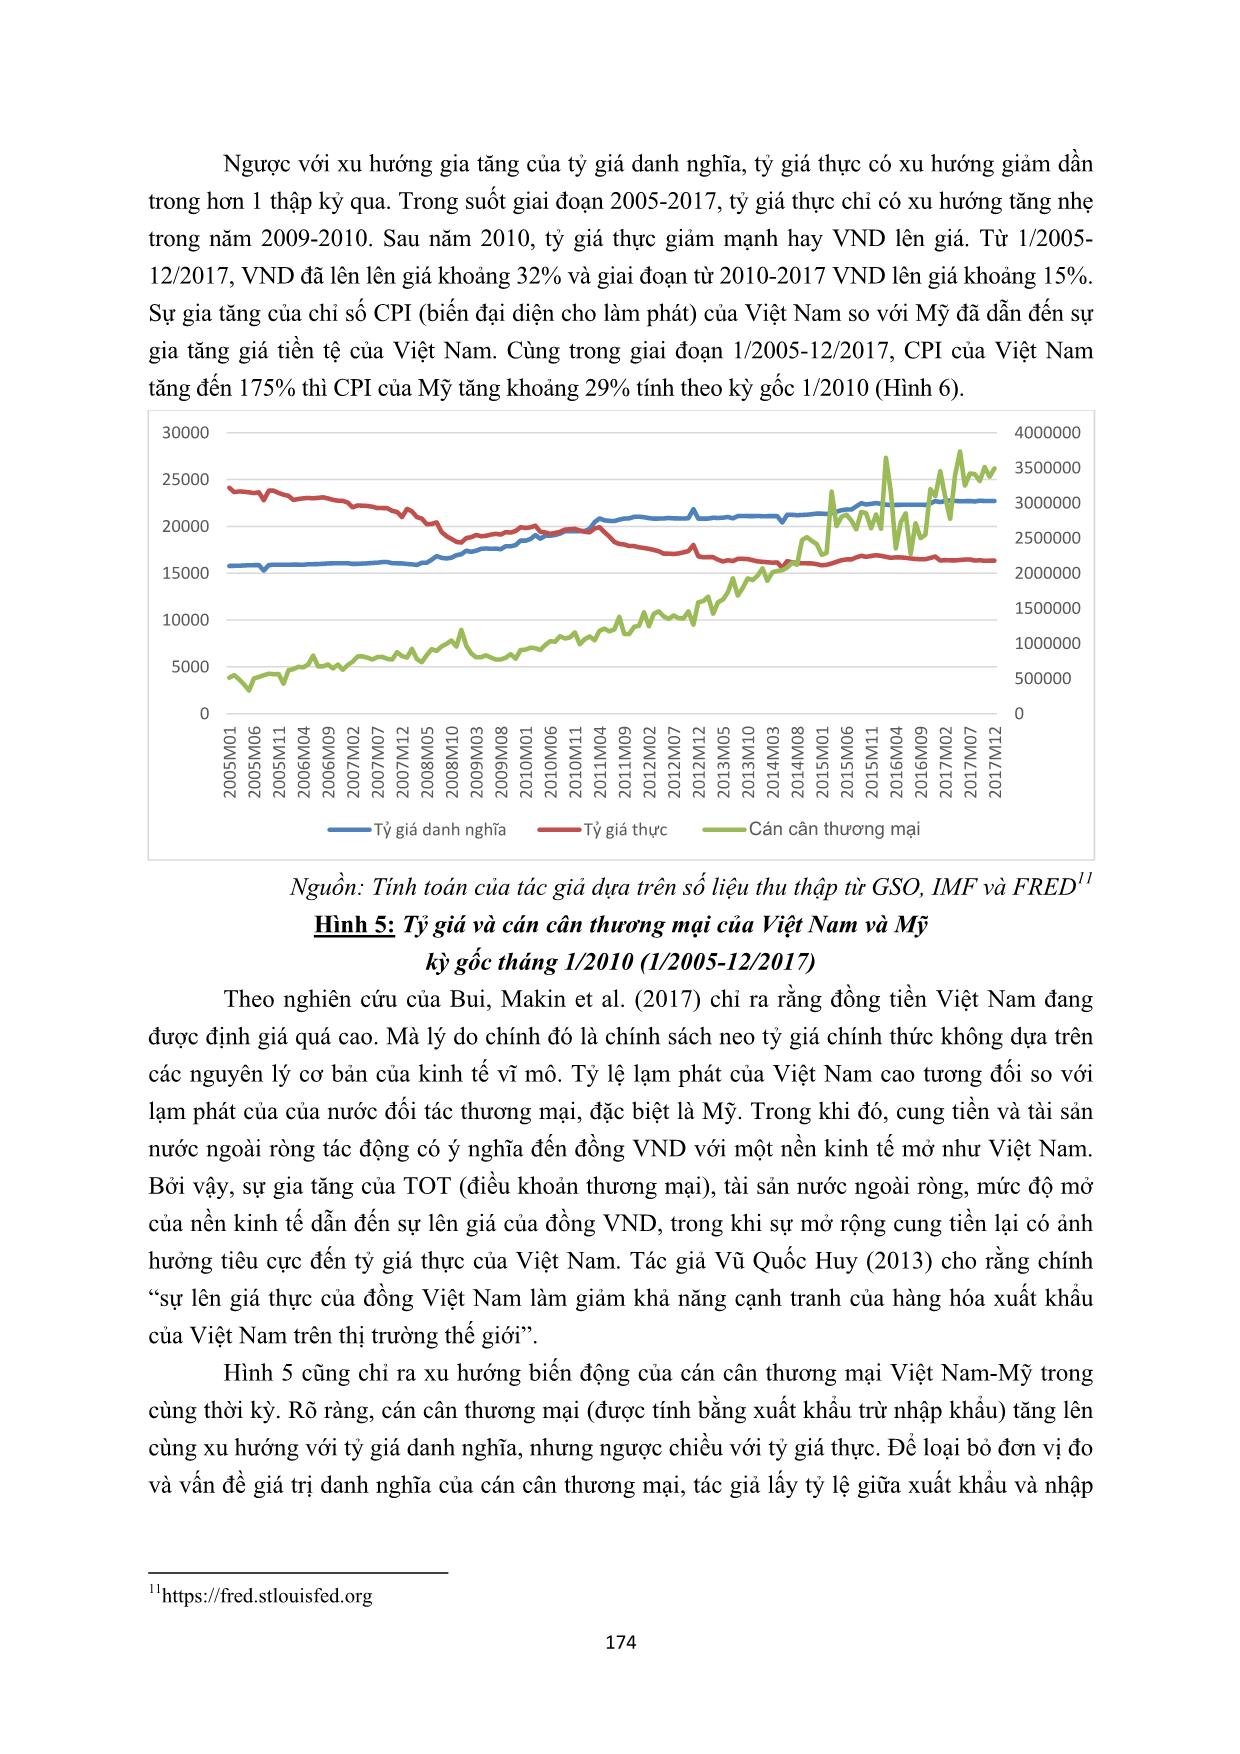 Tác động của tỷ giá đến cán cân thương mại Việt Nam - Mỹ giai đoạn 2008-2017 trang 5